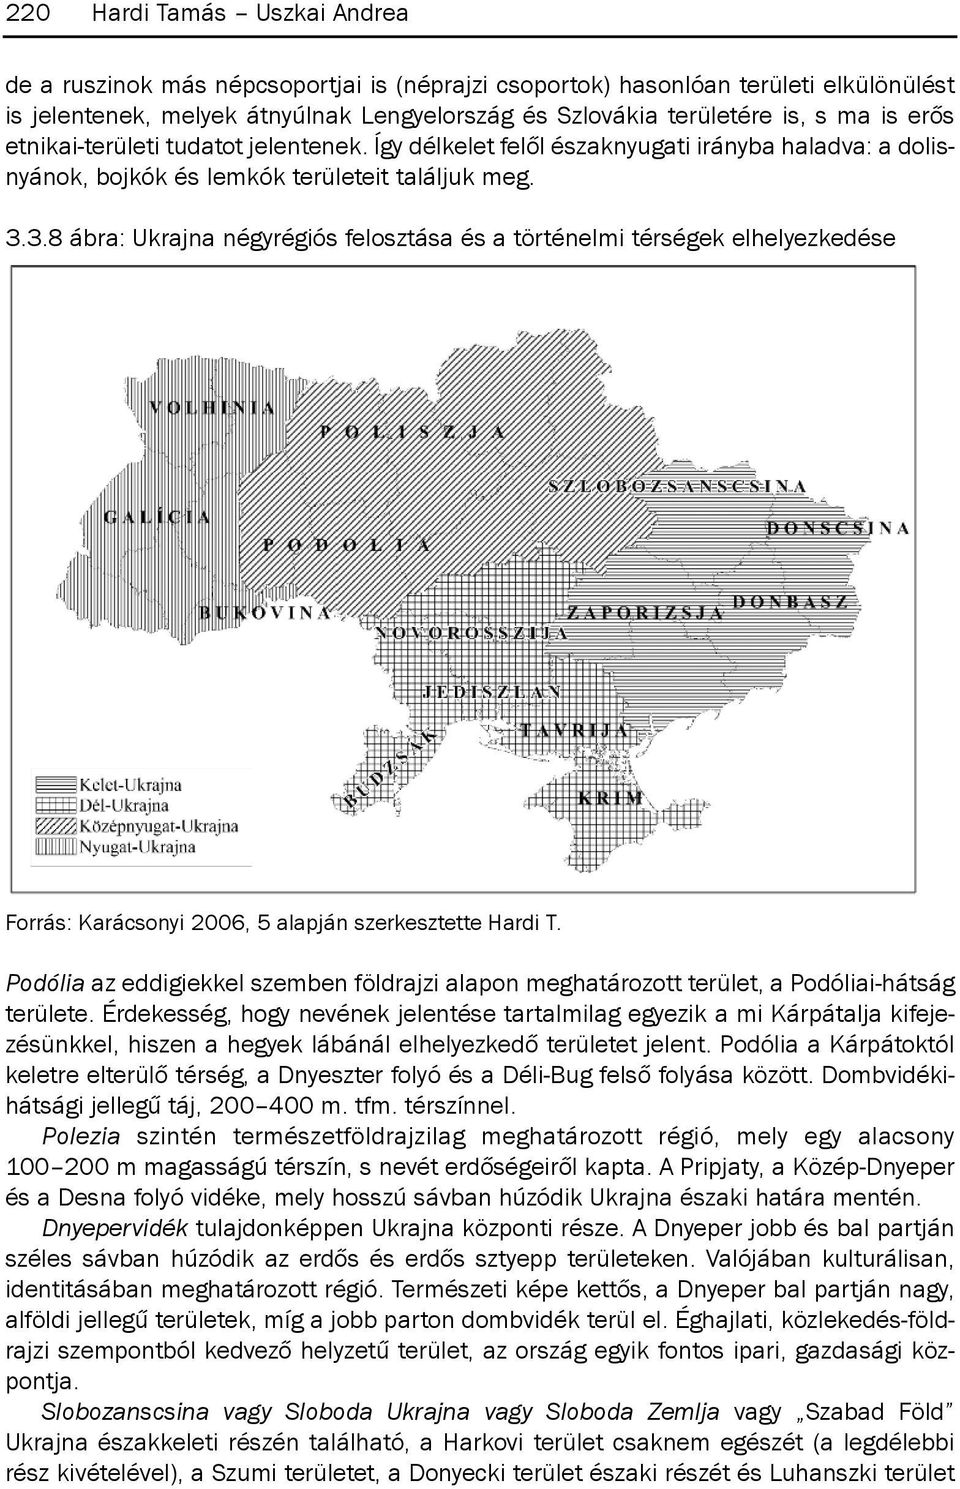 3.8 ábra: Ukrajna négyrégiós felosztása és a történelmi térségek elhelyezkedése forrás: karácsonyi 2006, 5 alapján szerkesztette Hardi t.